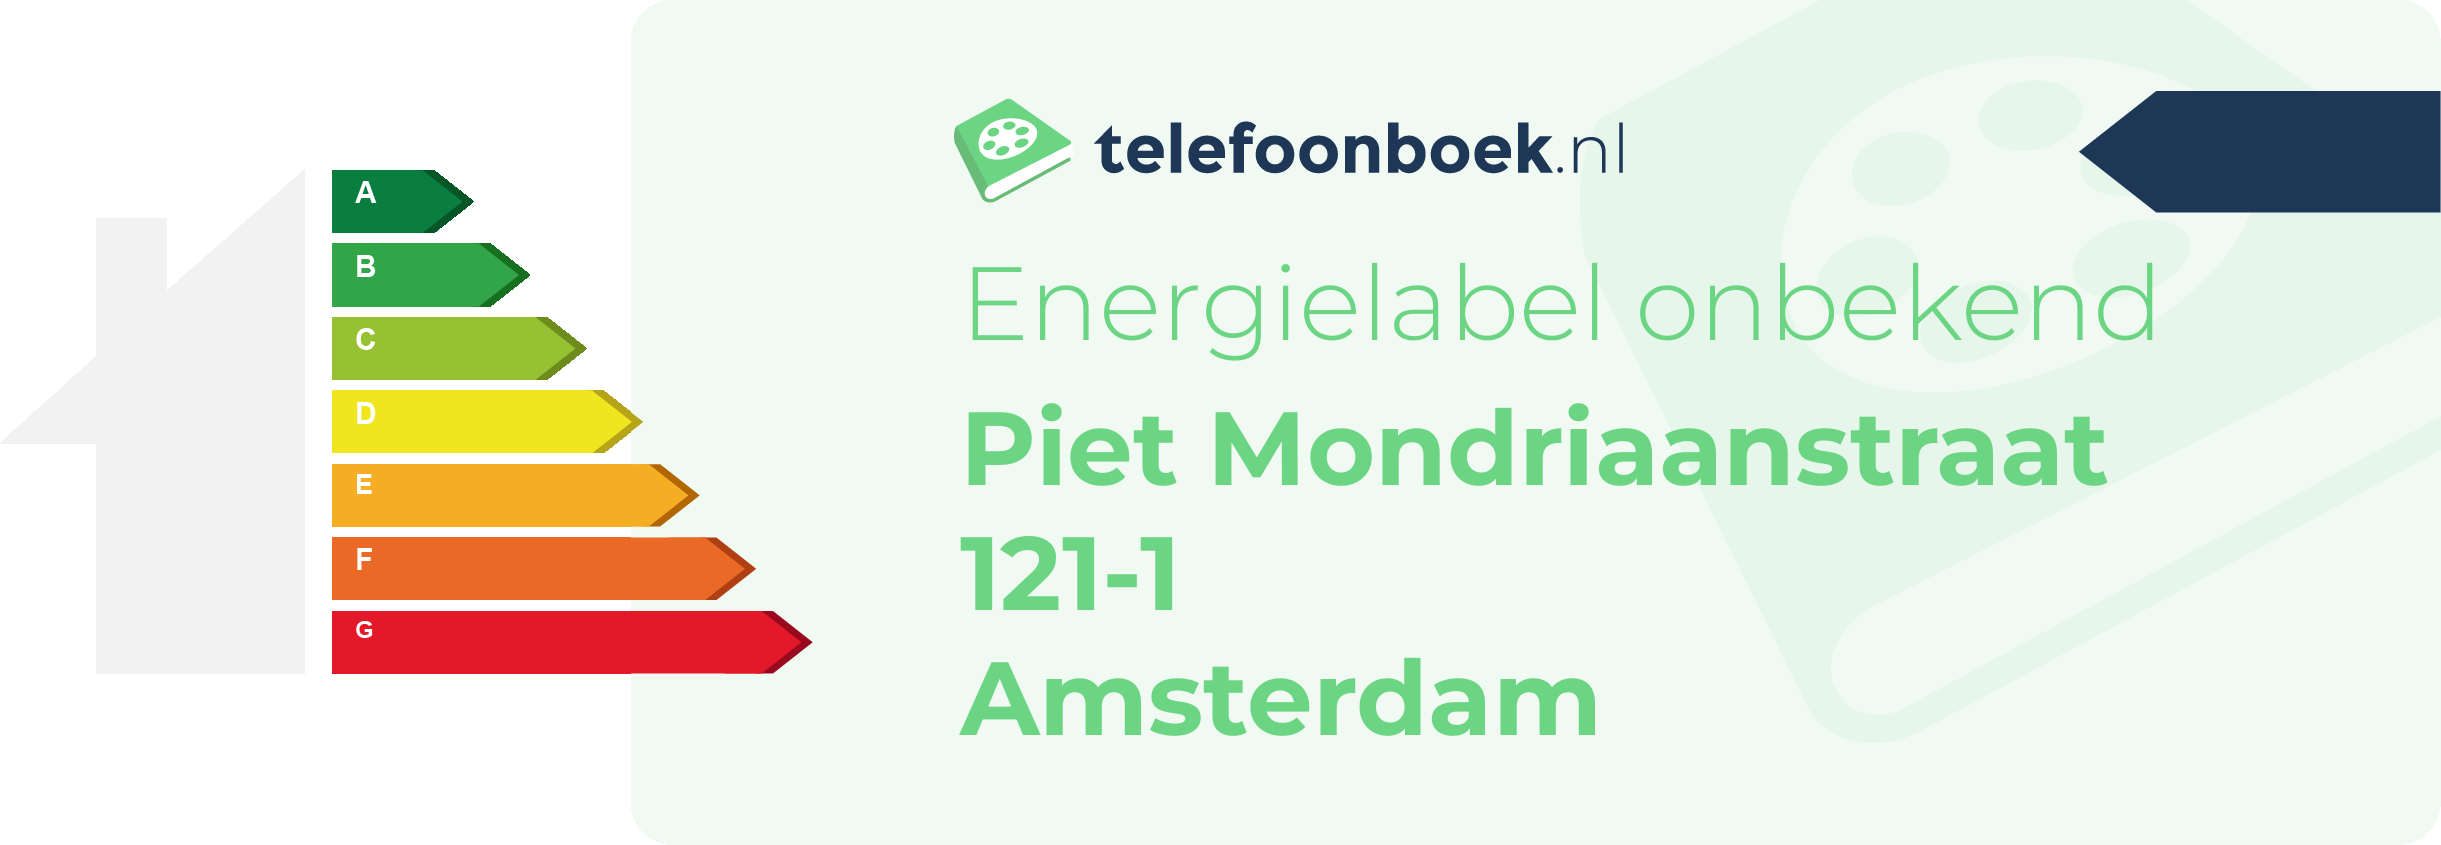 Energielabel Piet Mondriaanstraat 121-1 Amsterdam